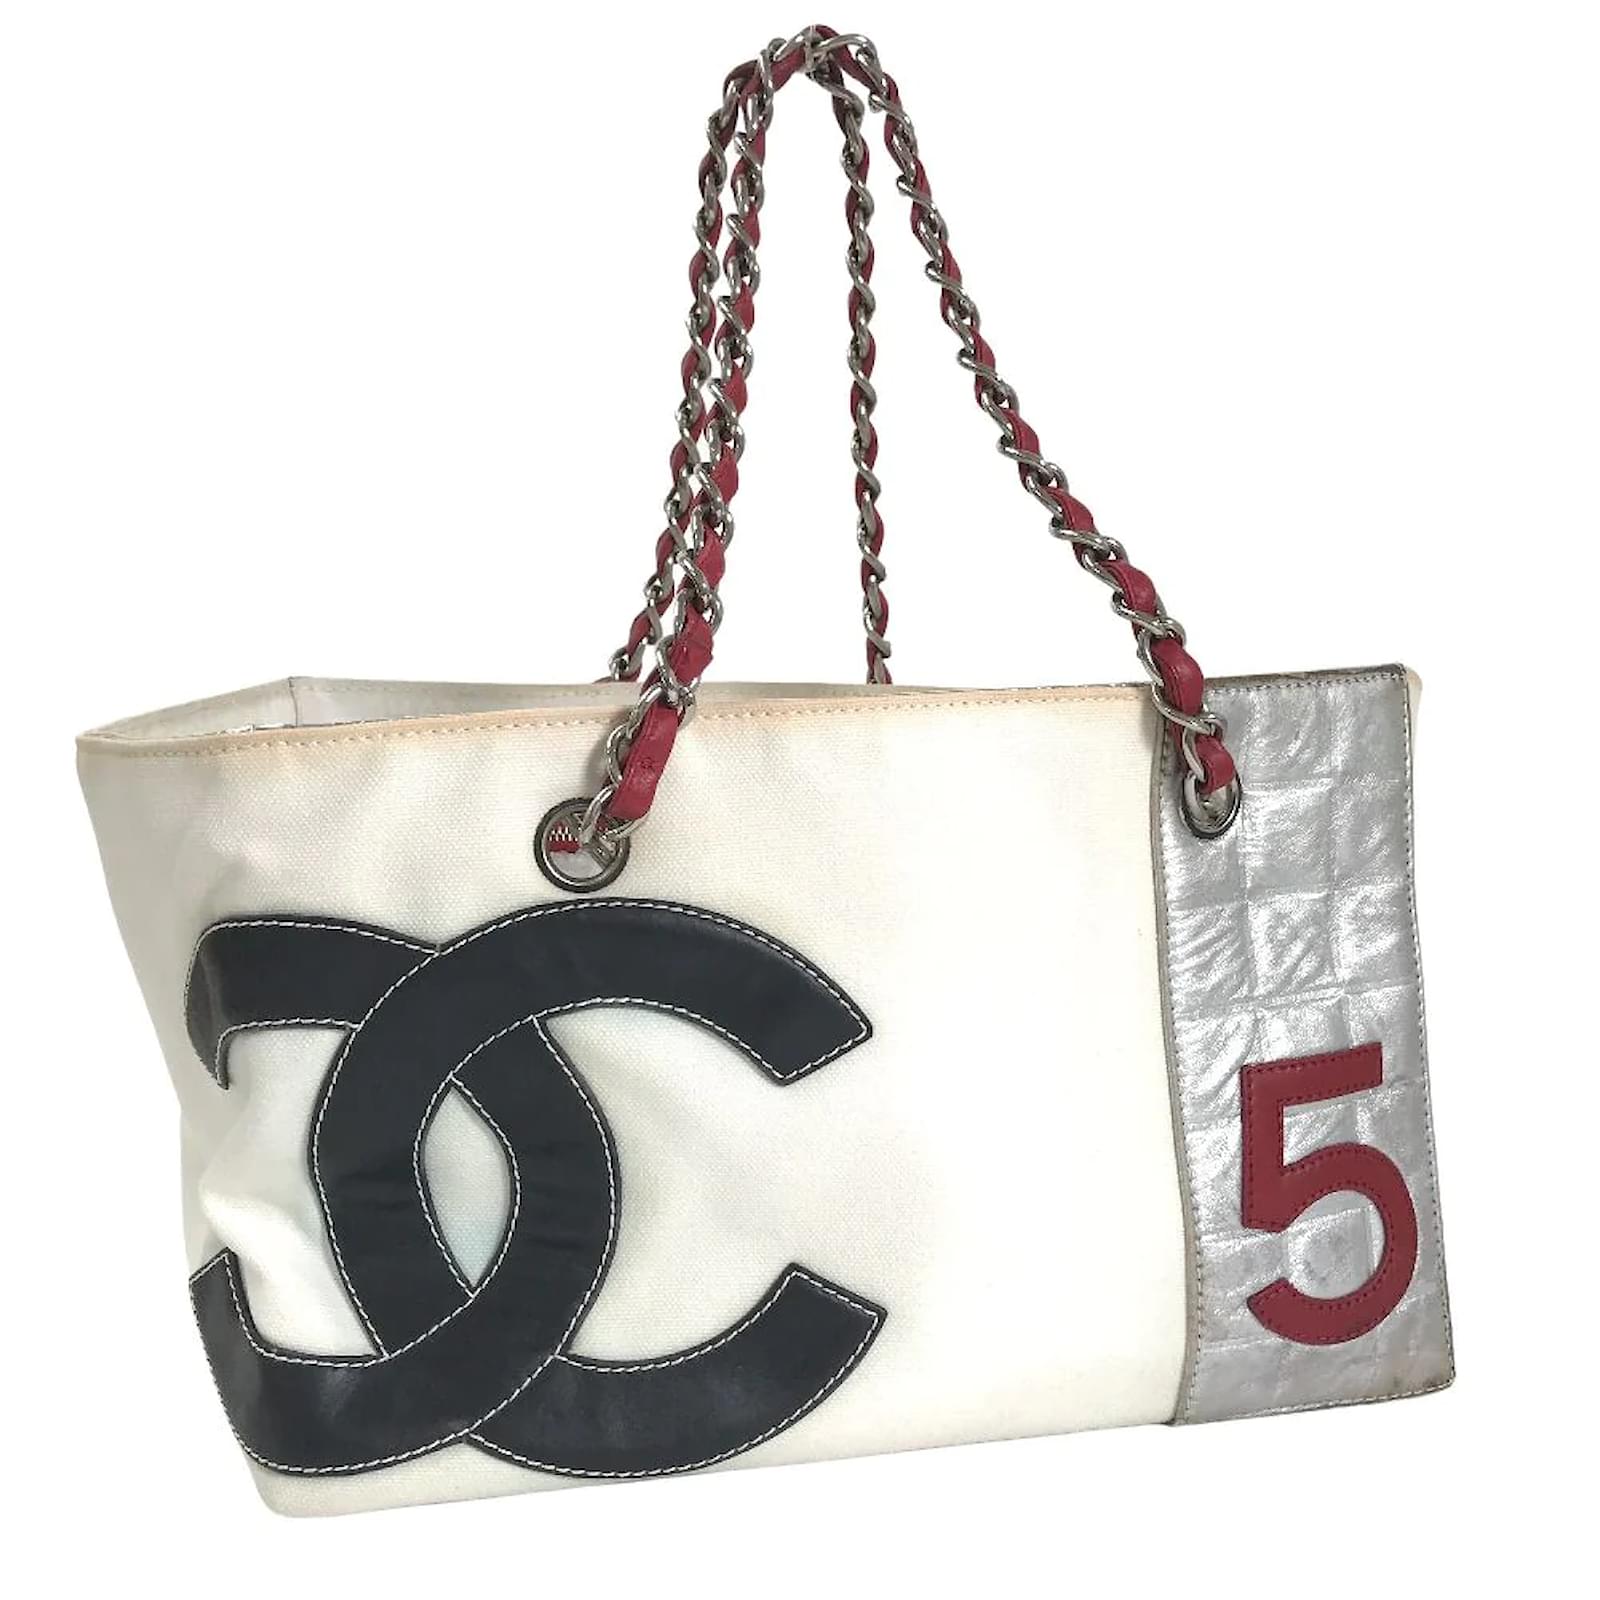 Chanel Chanel Coco Window Grey & White Canvas Tote Bag